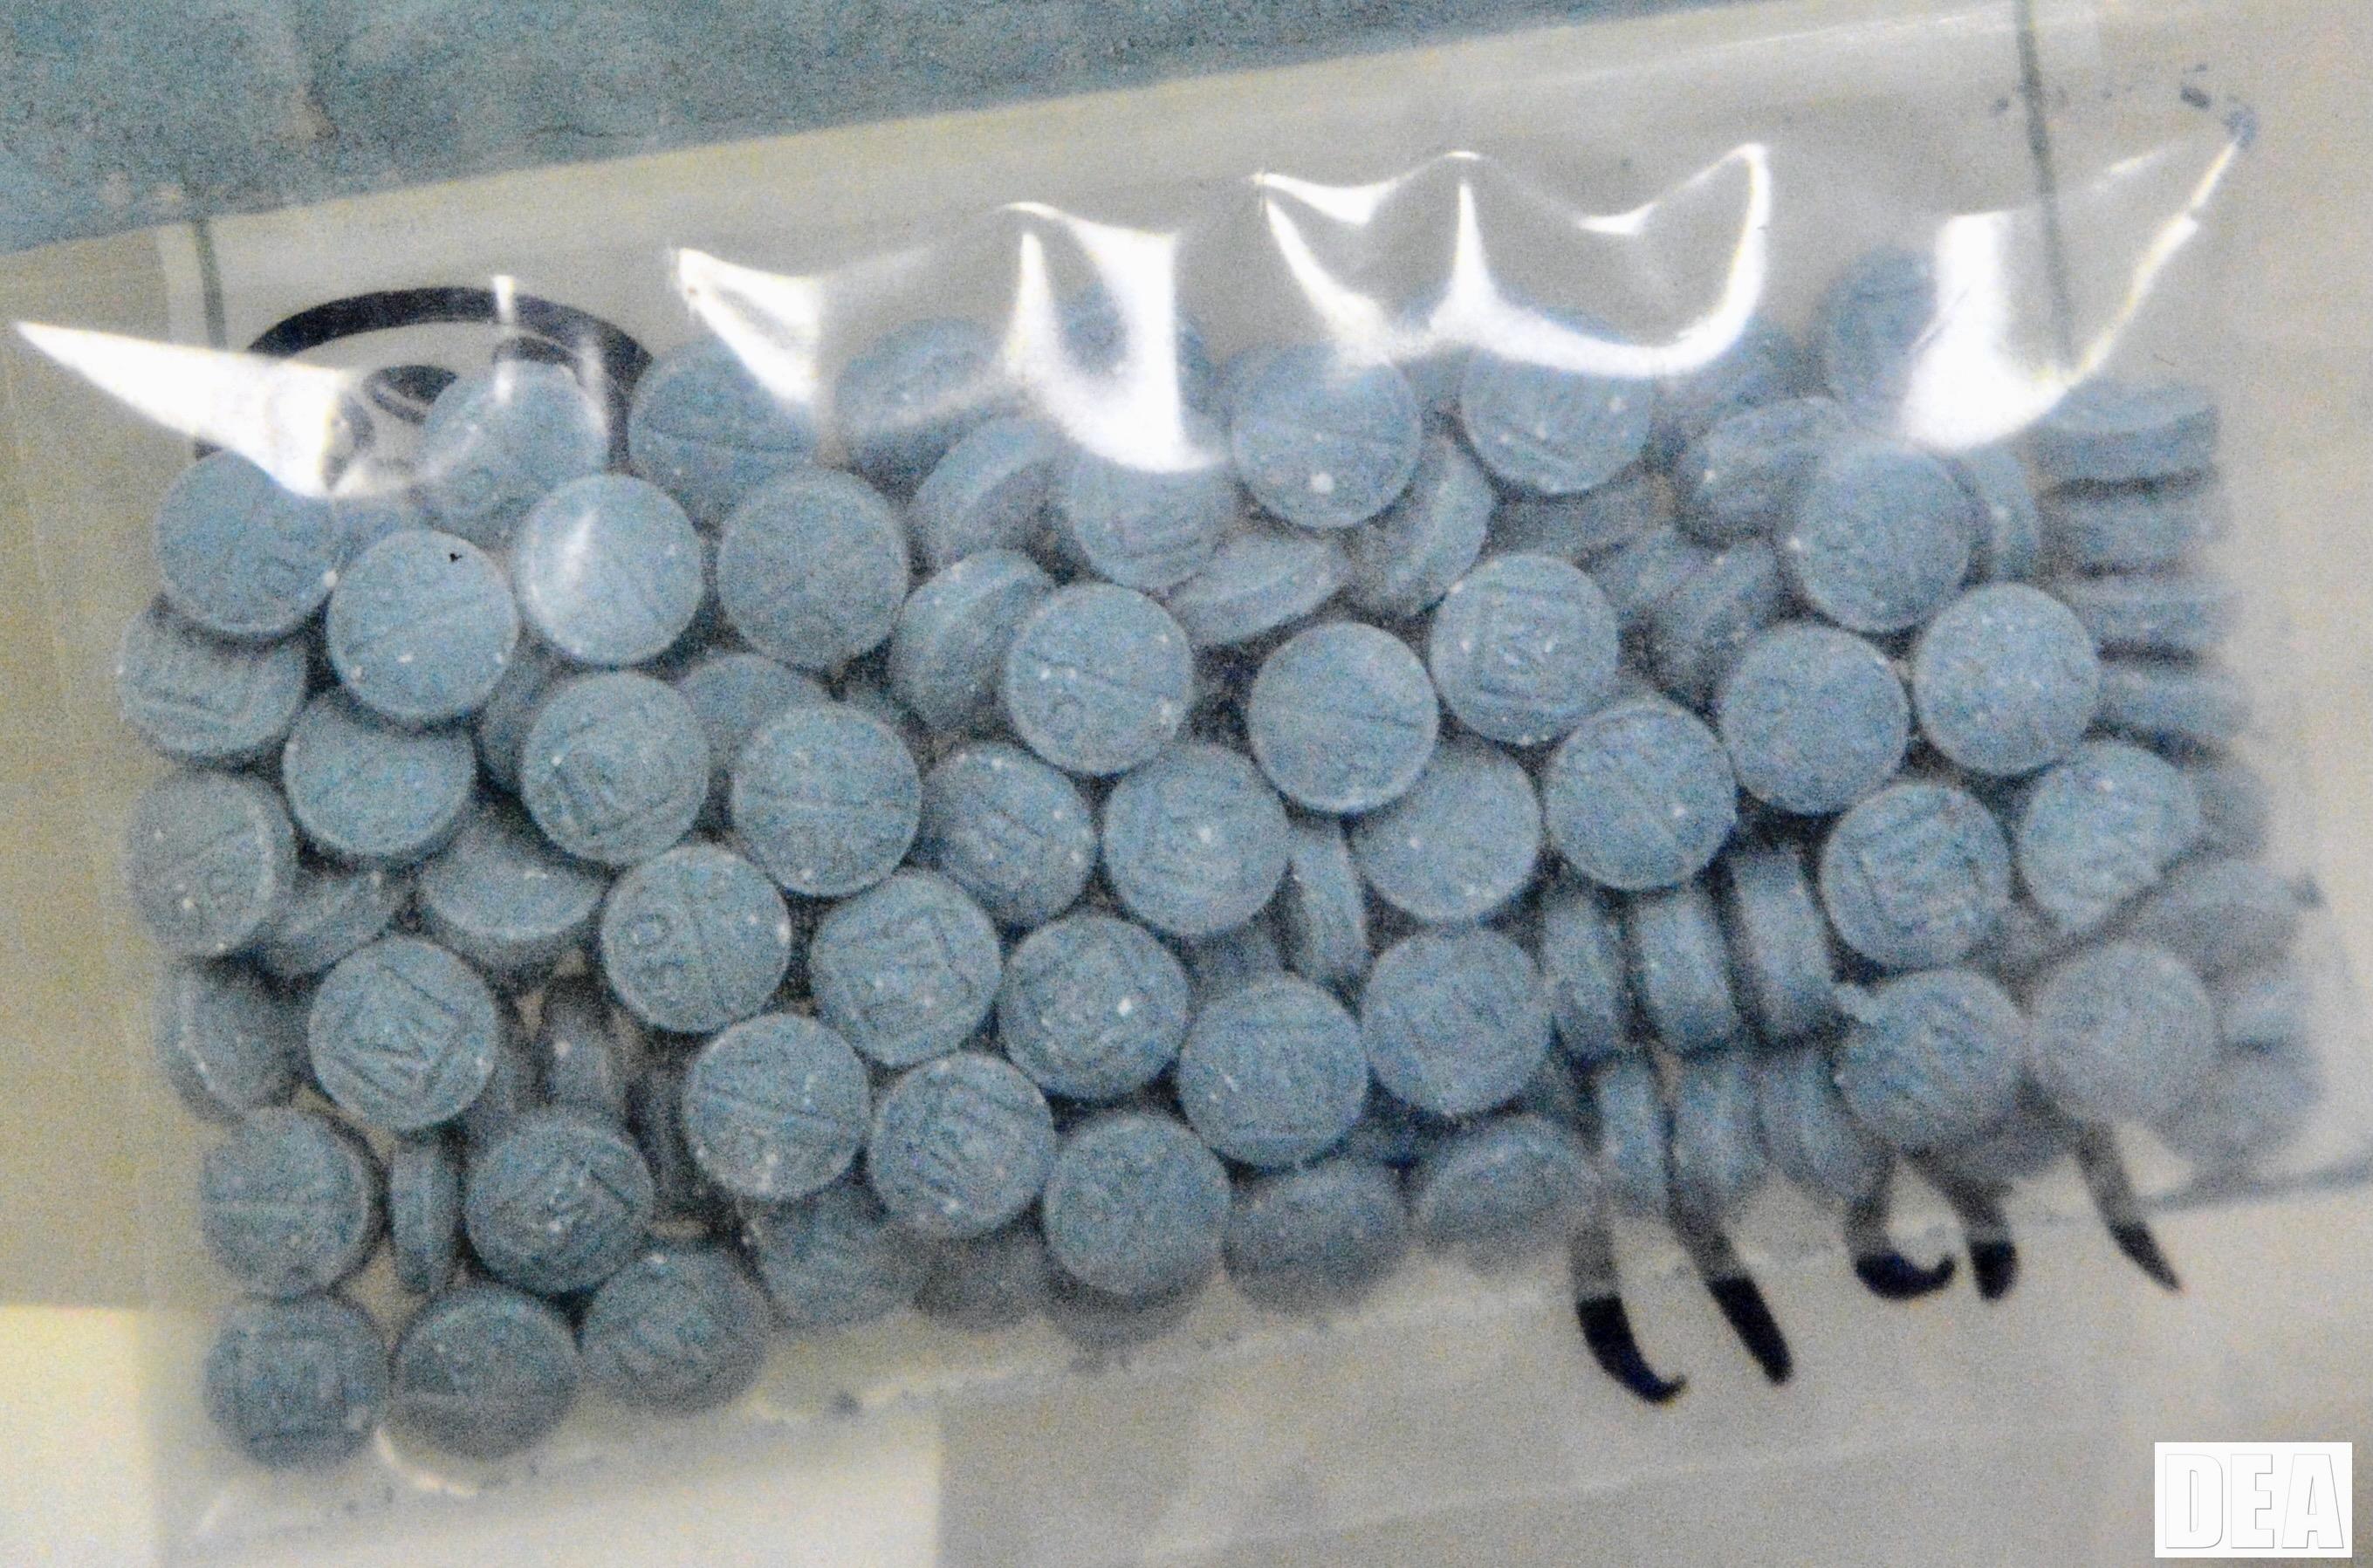 720,000 Fentanyl Pills Seized in San Diego Operation